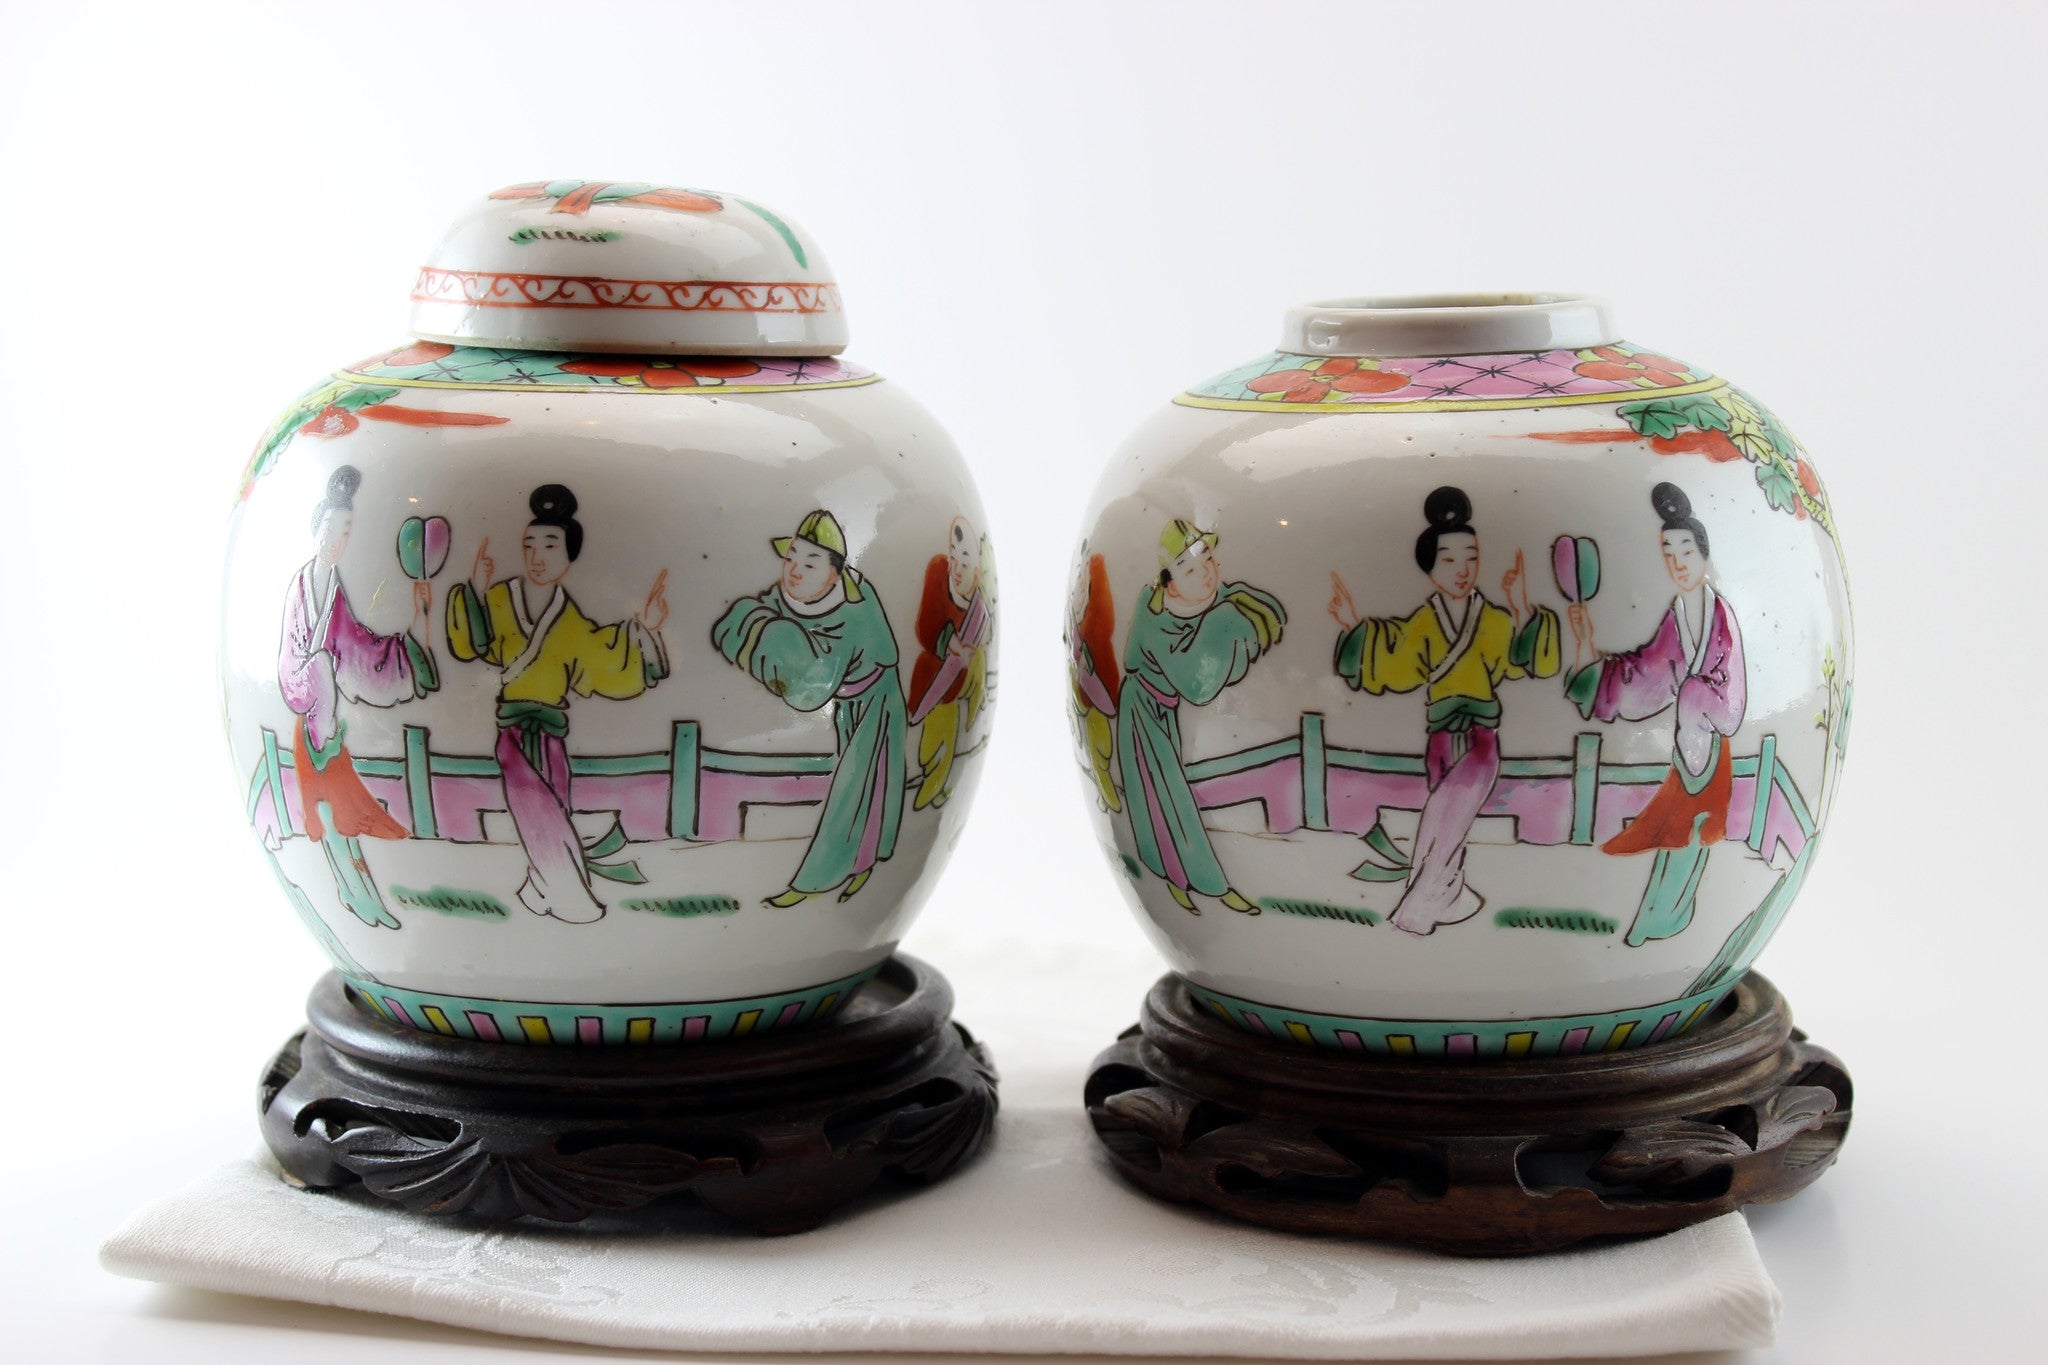 Antique Chinese Porcelain Ginger Jars